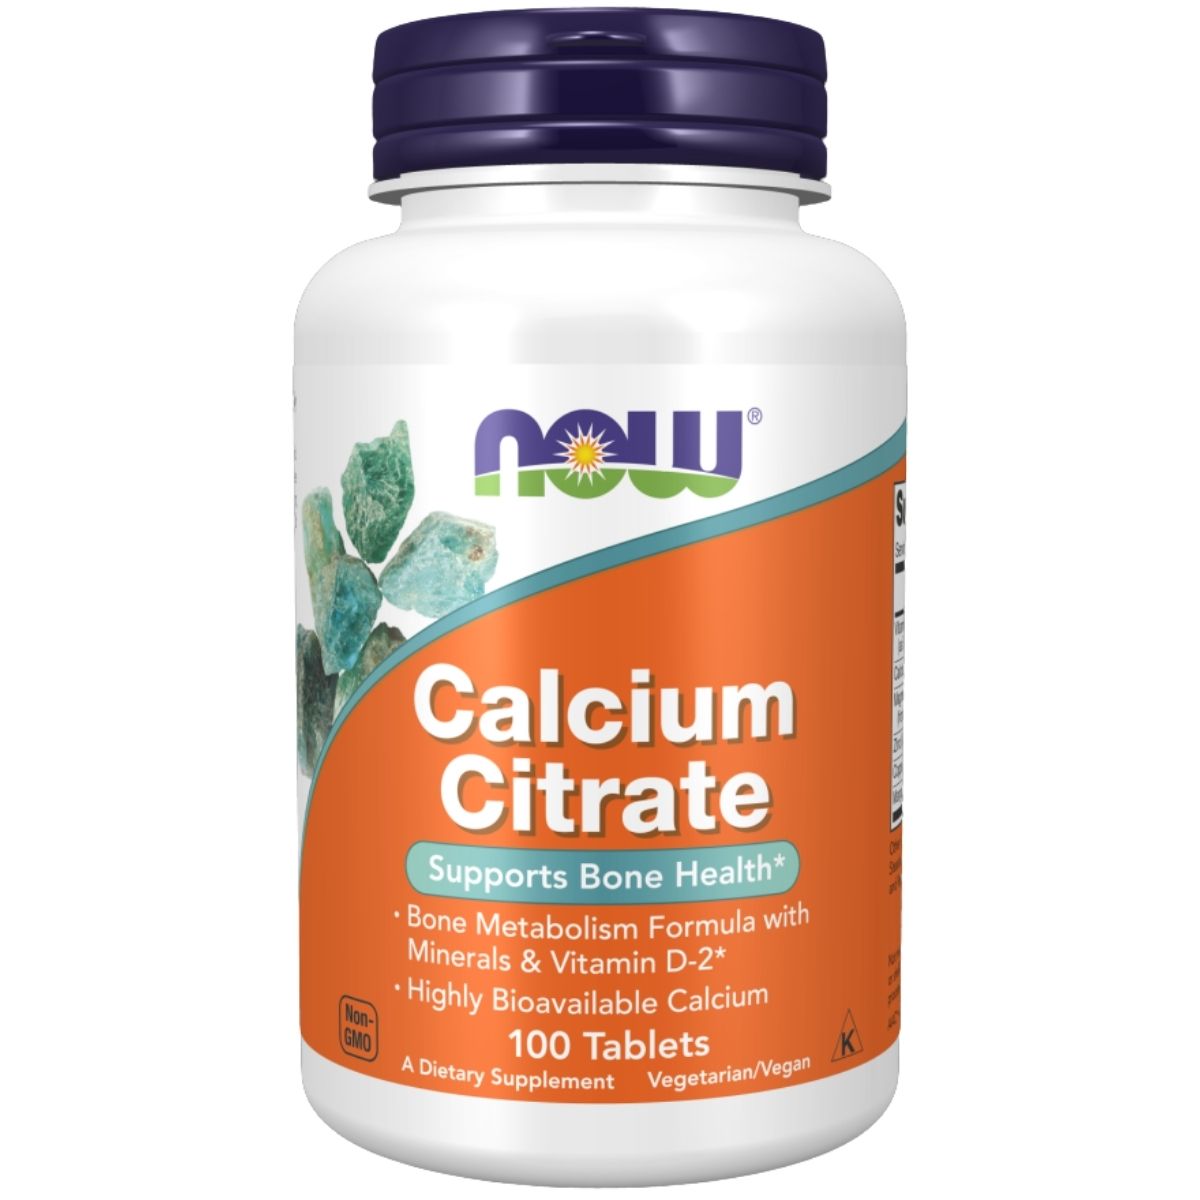 Calcium Citrate on sale!